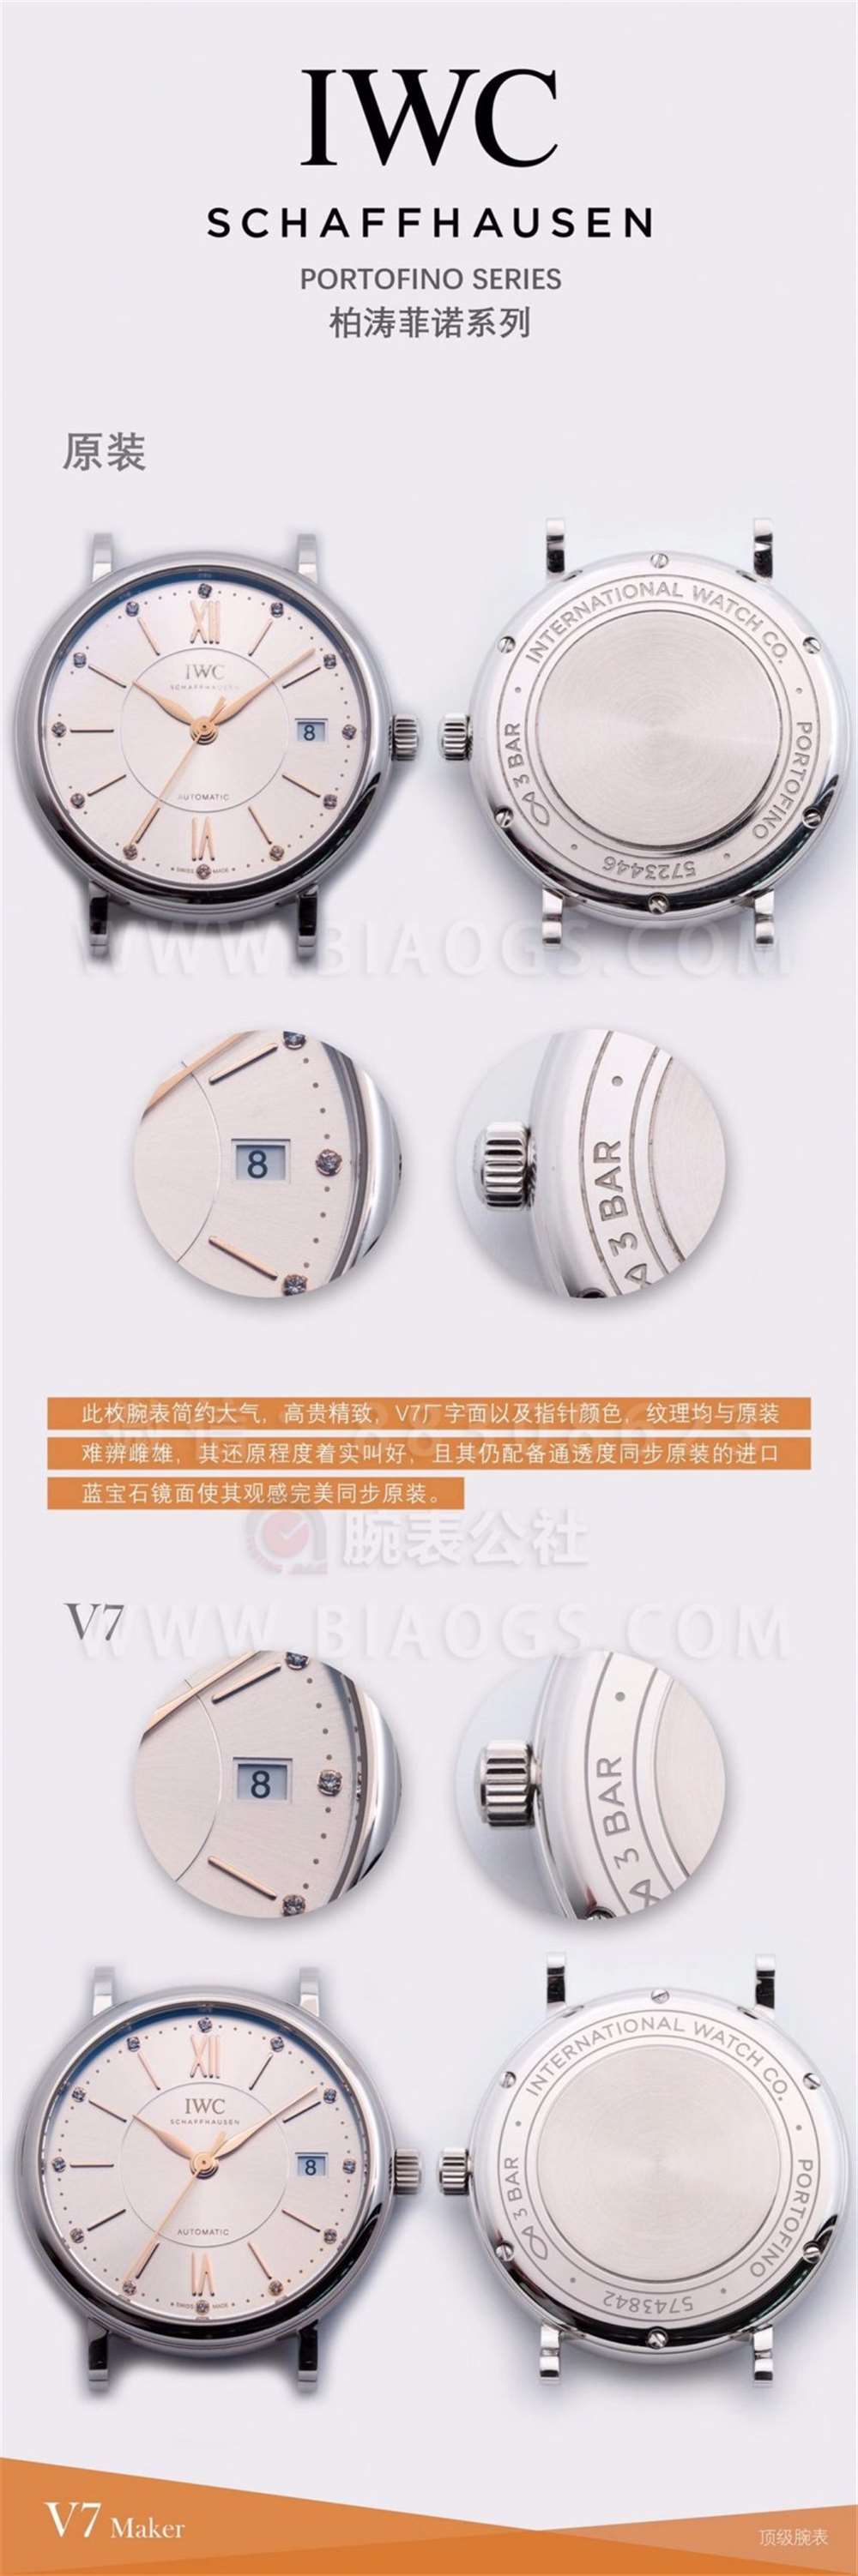 V7厂万国柏涛菲诺37mm女士腕表对比正品评测  第3张